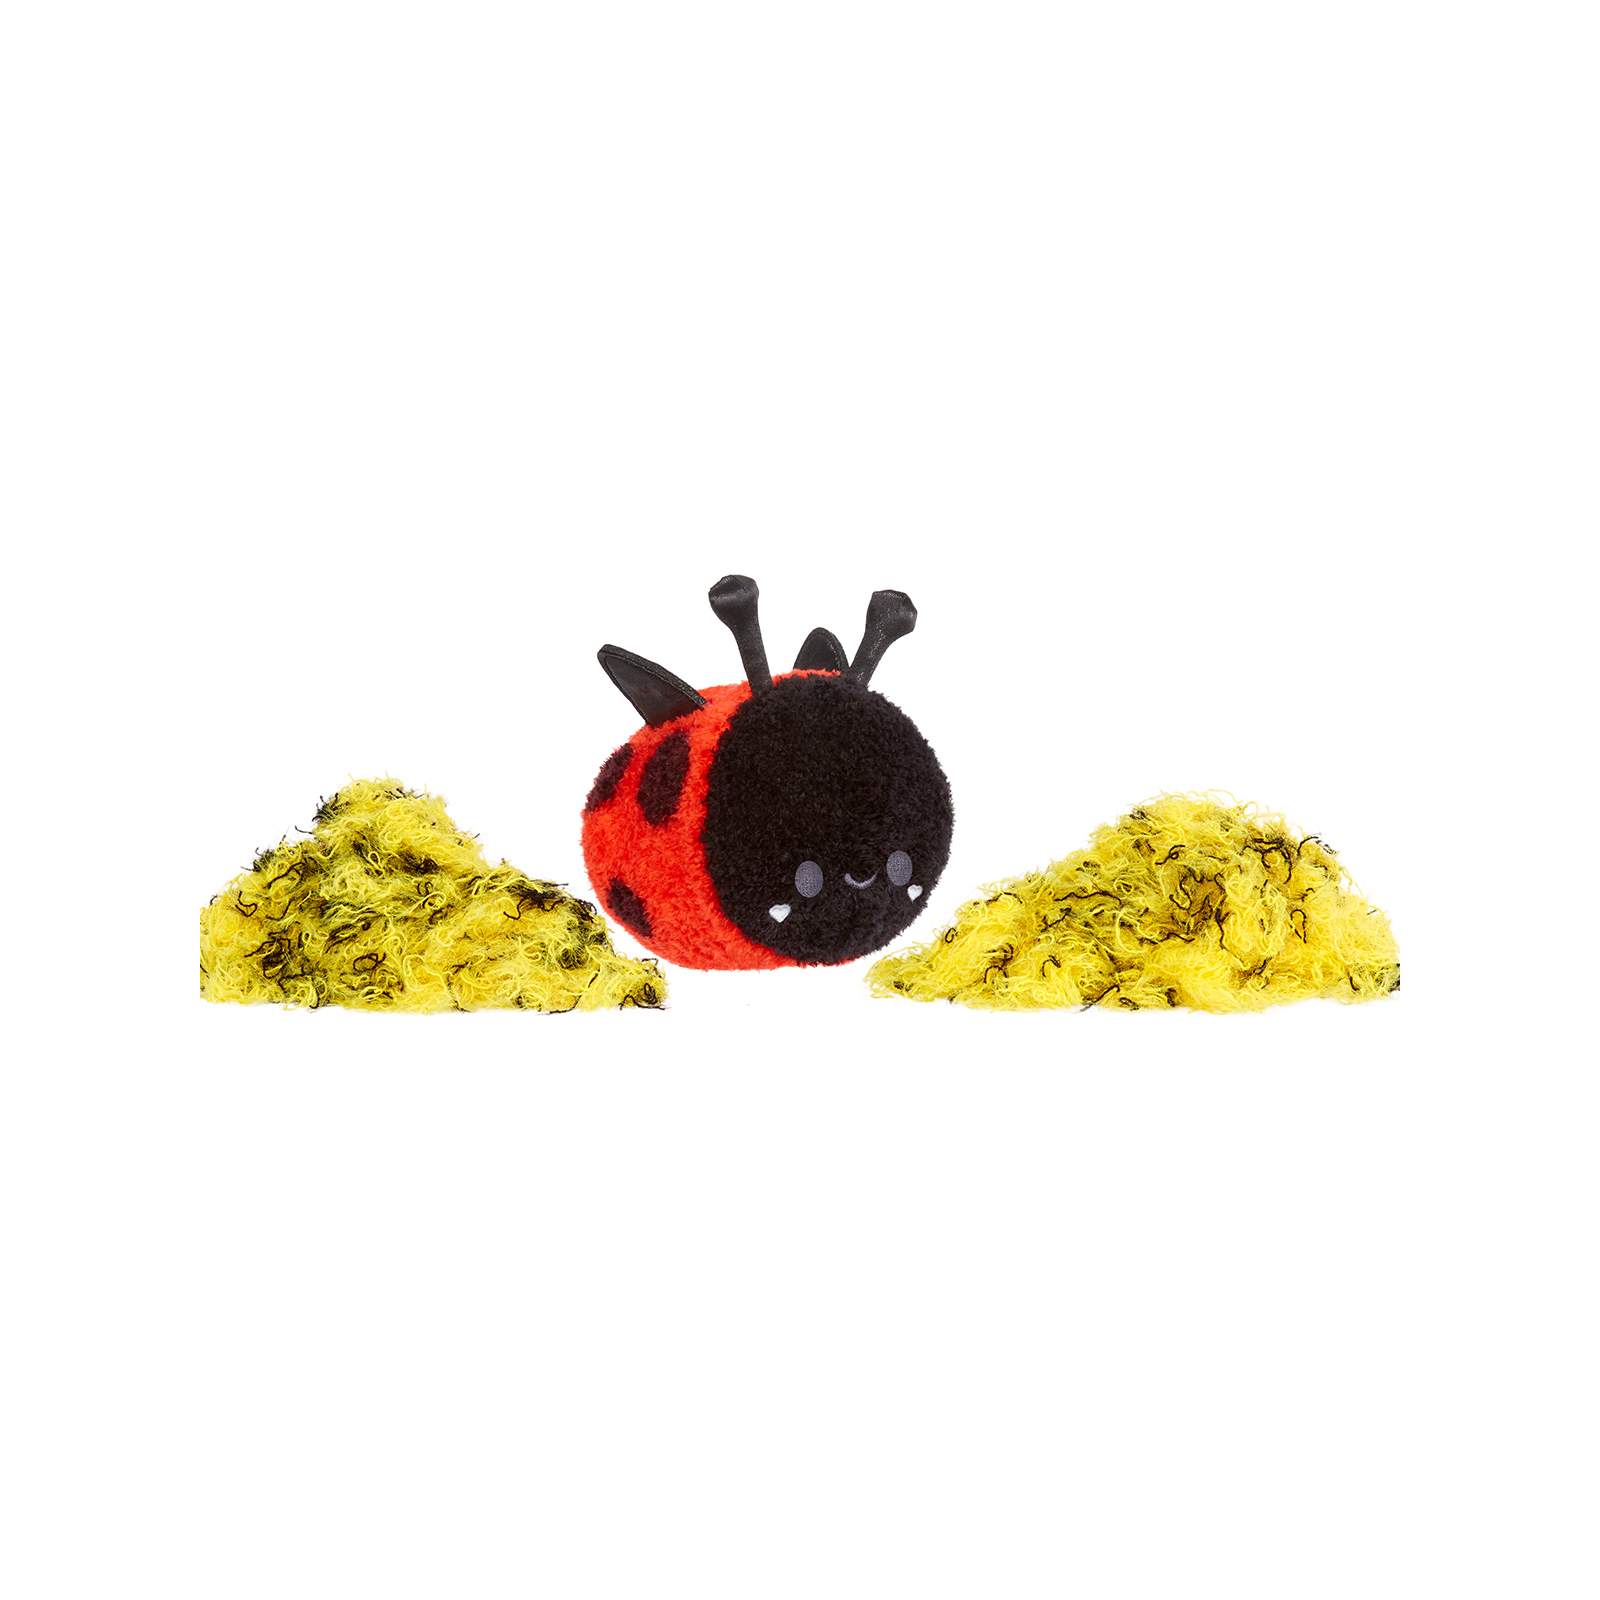 Развивающая игрушка Battat антистресс серии Small Plush-Пчелка/Солнышко (594475-5) изображение 5